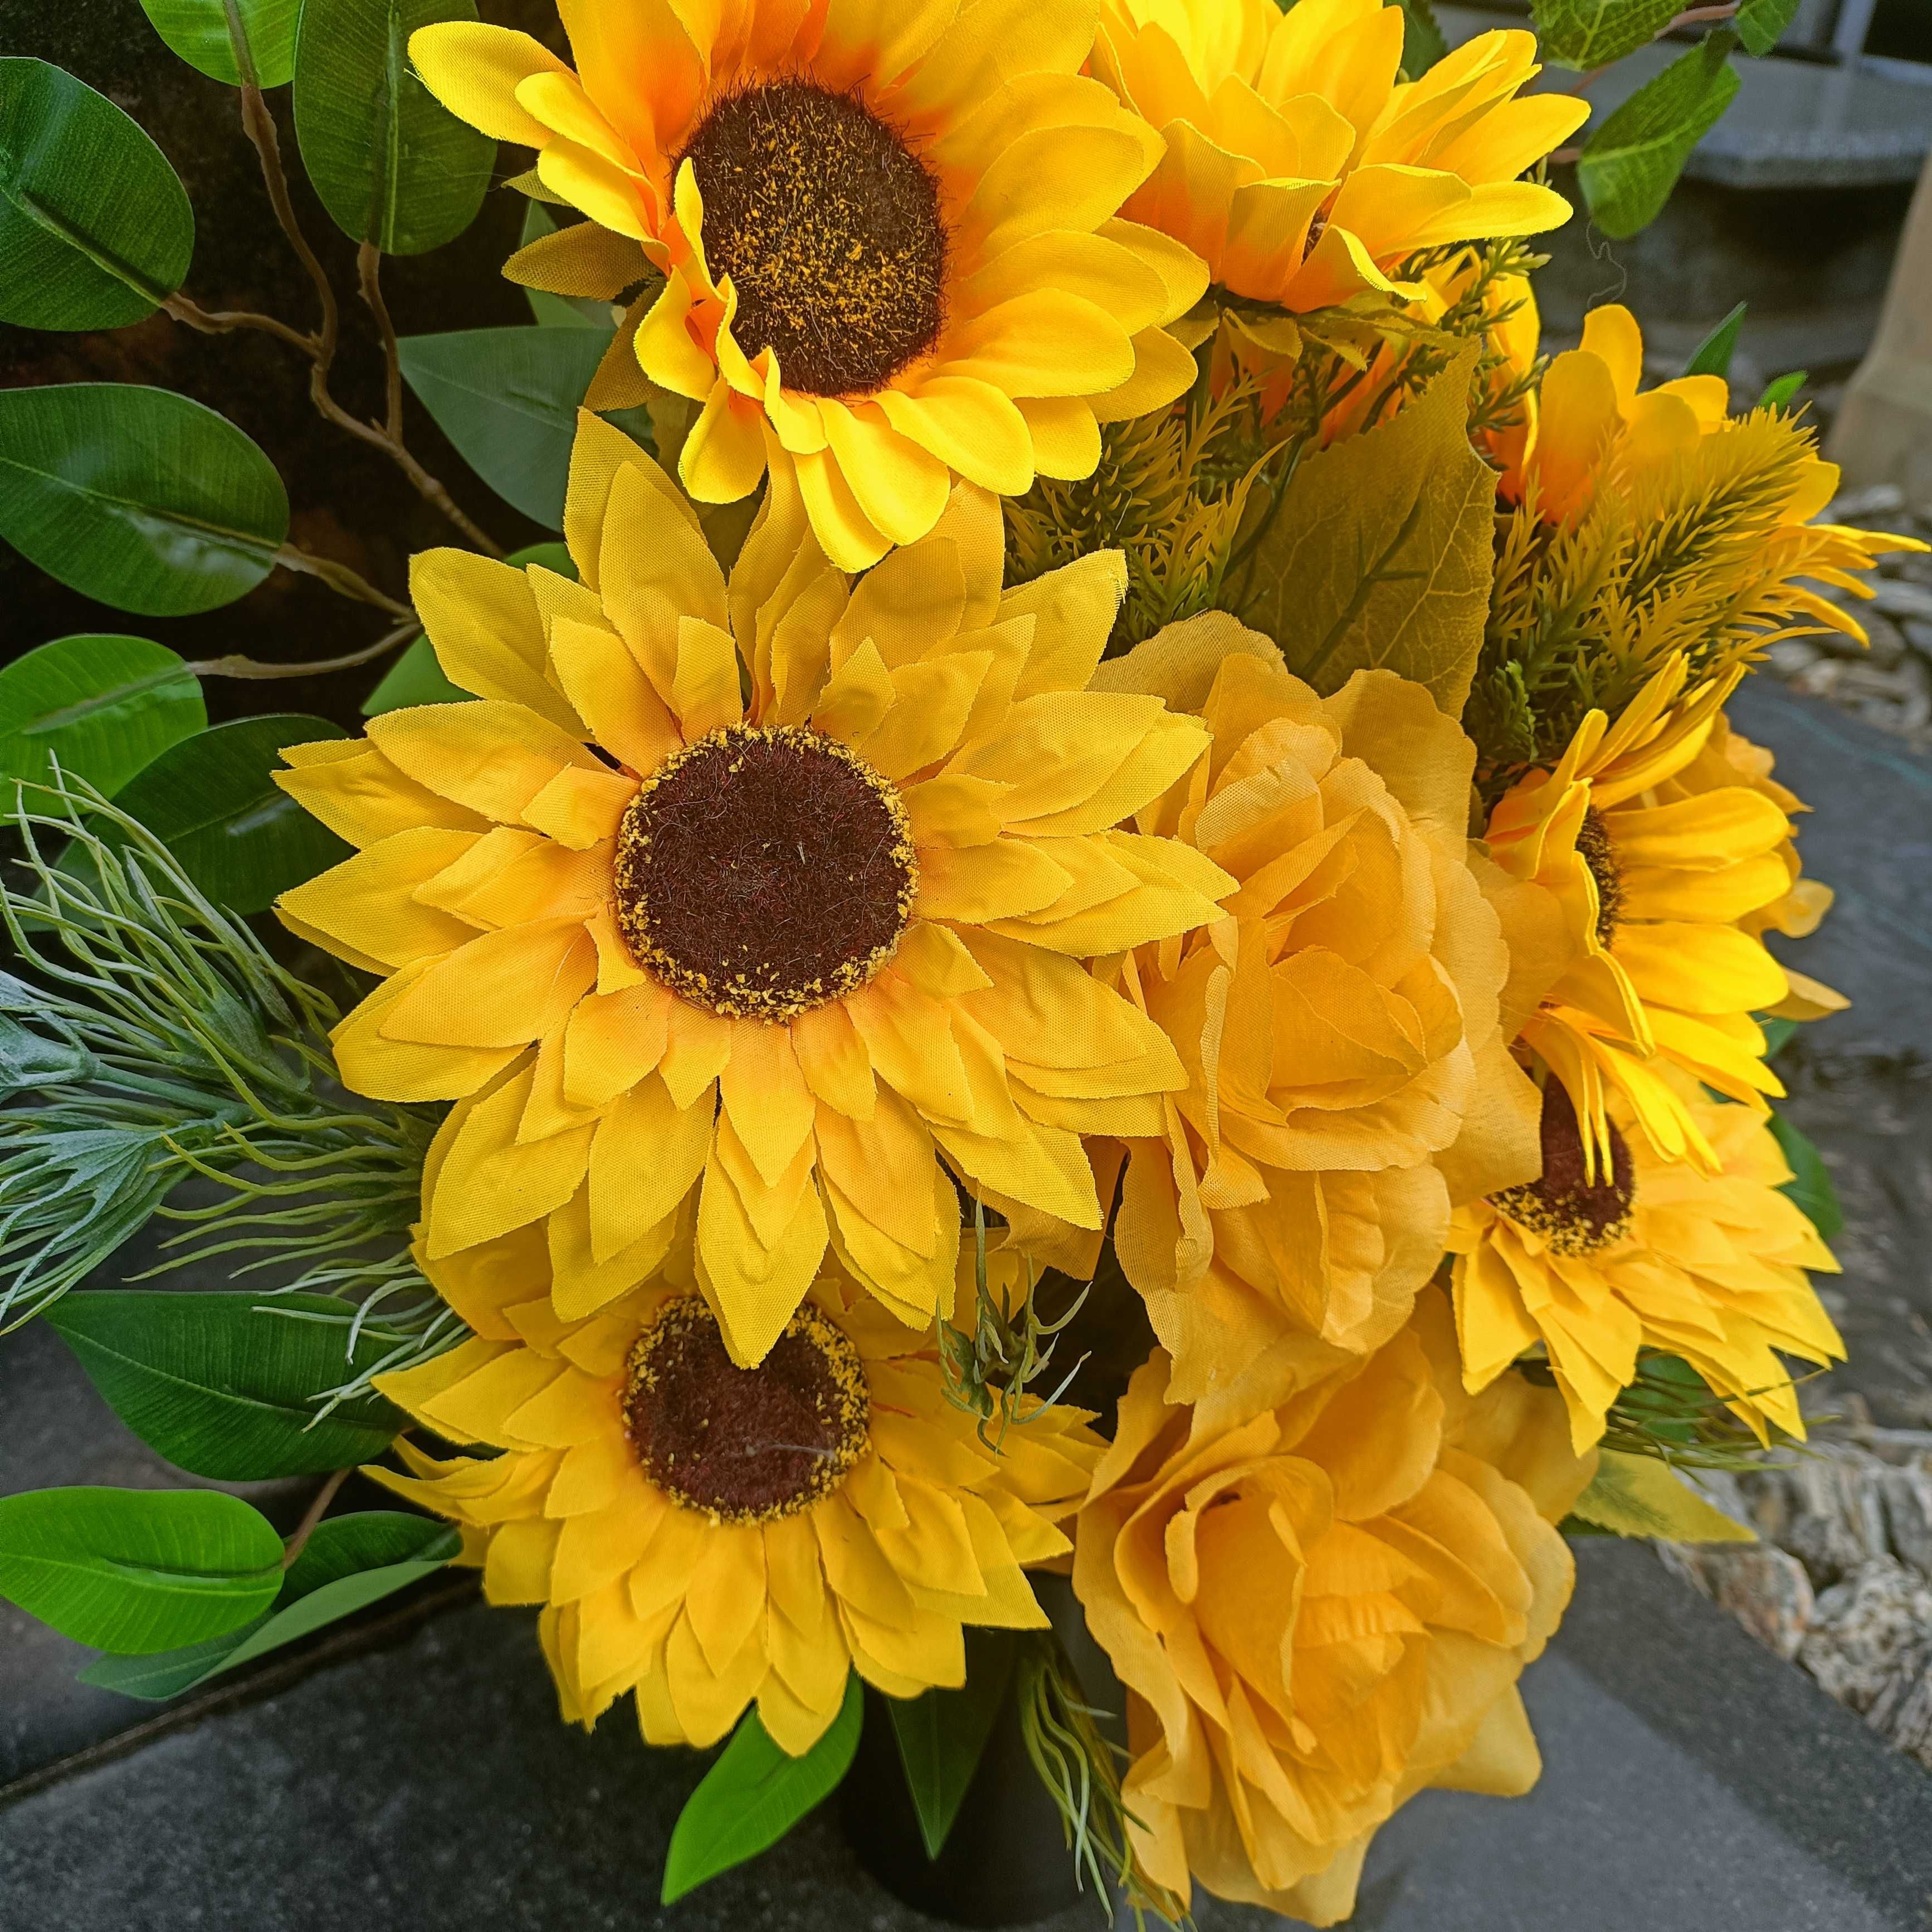 Bukiet wiązanka nagrobna żółta słoneczniki róże rękodzieło polskie